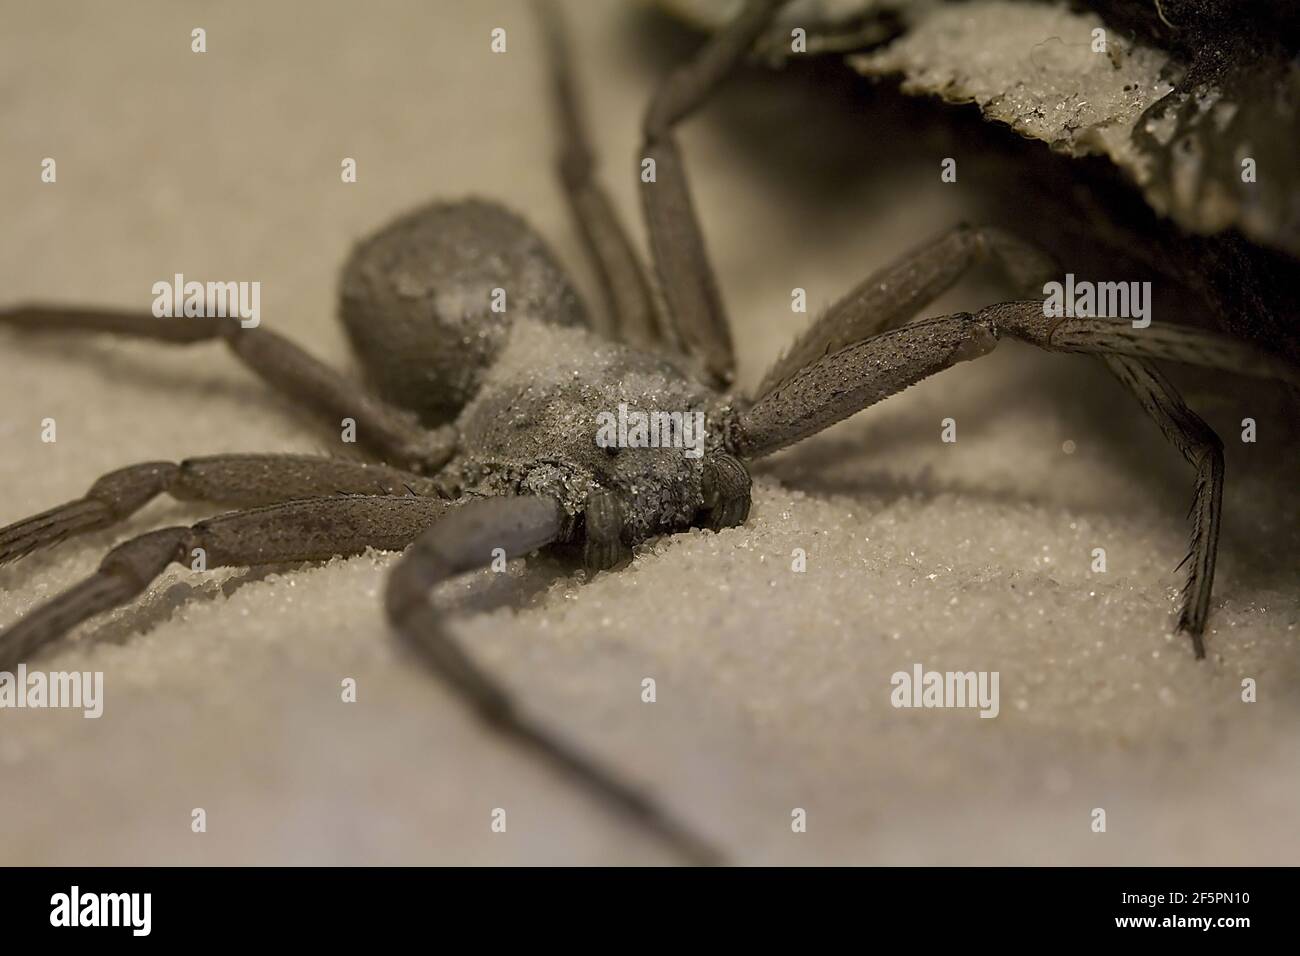 African sand spider (Sicarius terrosus) Stock Photo